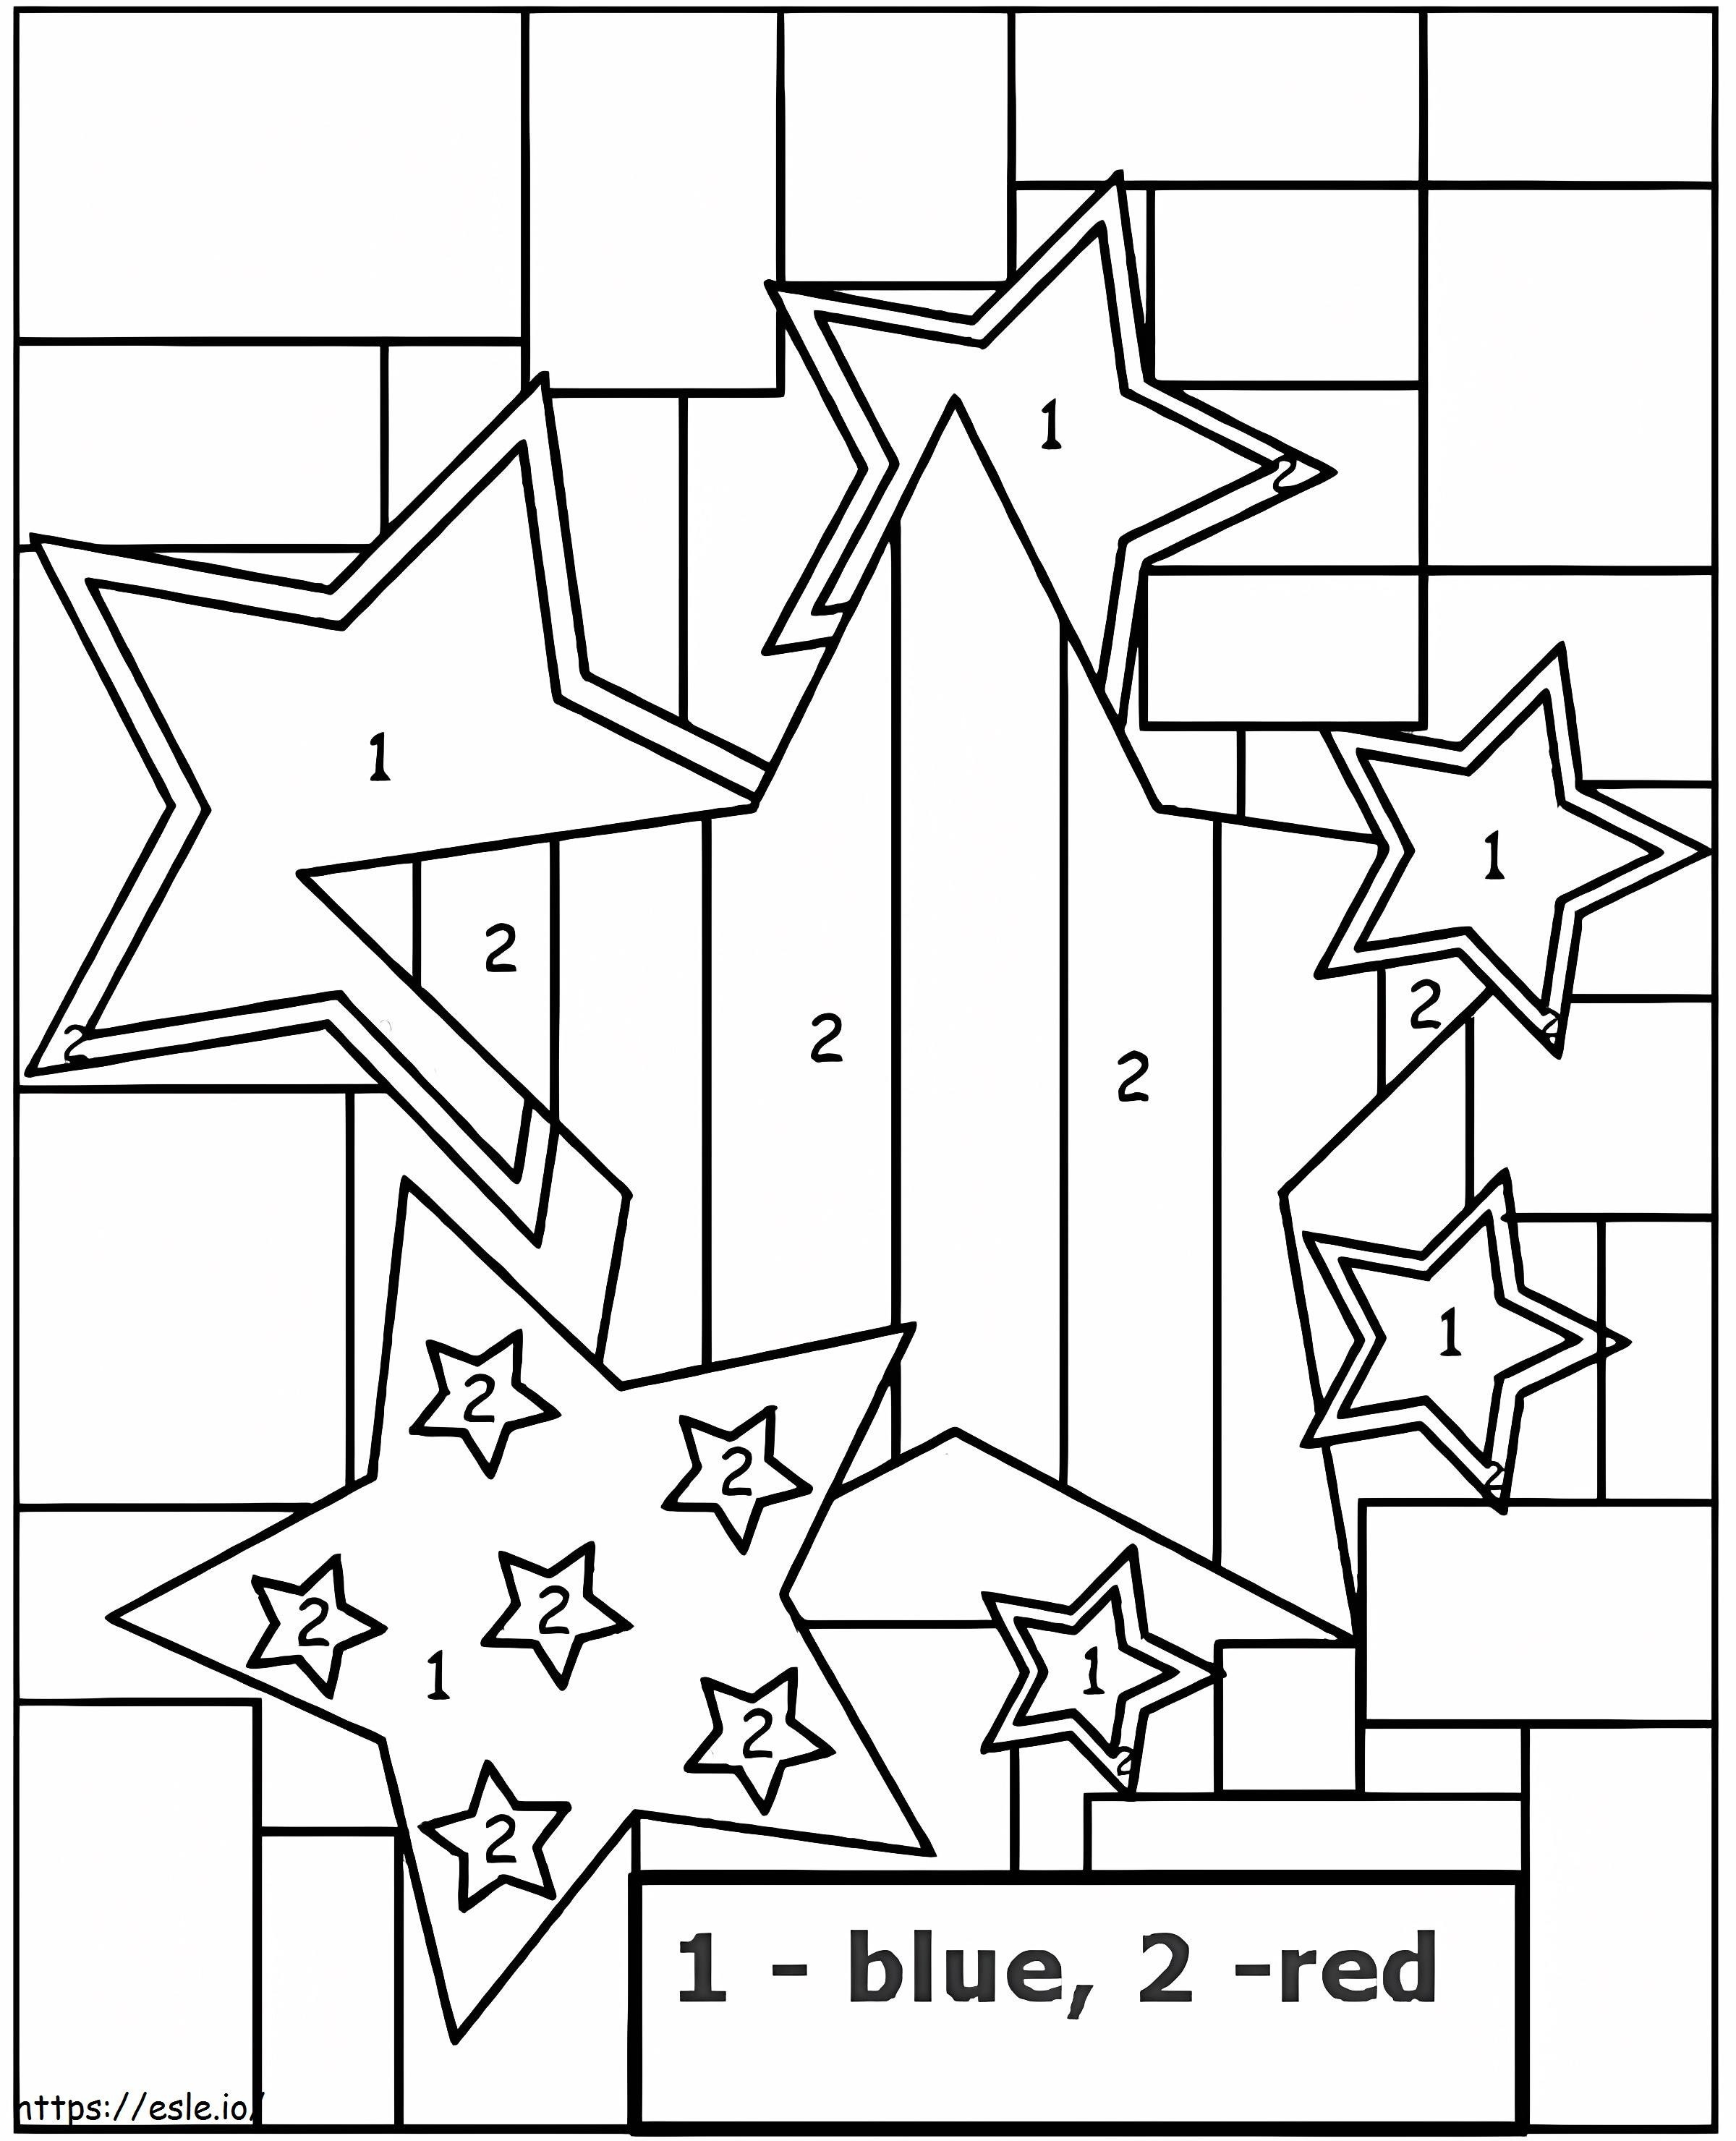 Estrelas para o jardim de infância coloridas por número para colorir